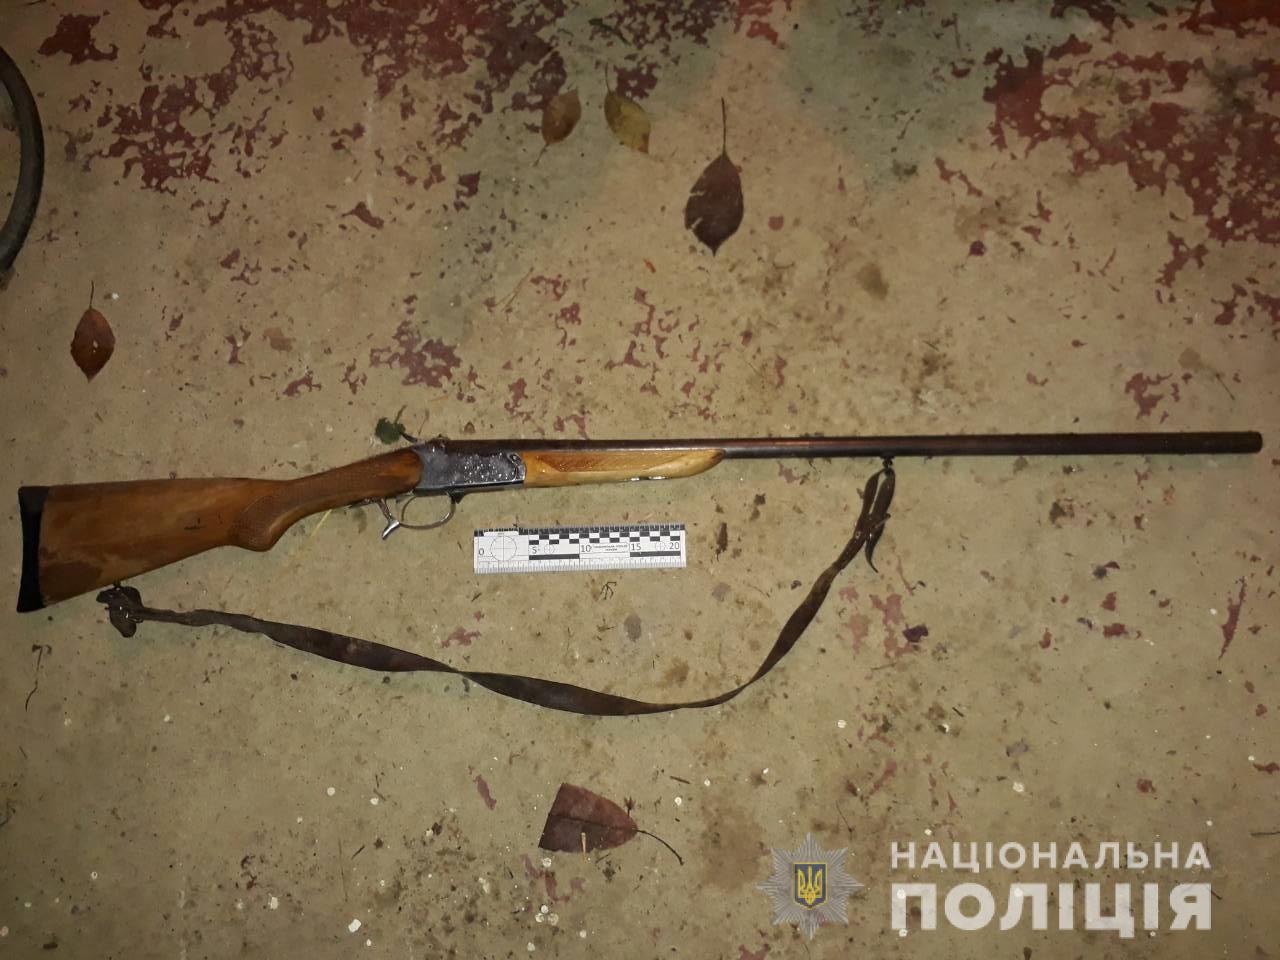 У Шишлівцях на Ужгородщині, чоловік, стріляючи в собаку, застрелив сестру дружини (ФОТО)